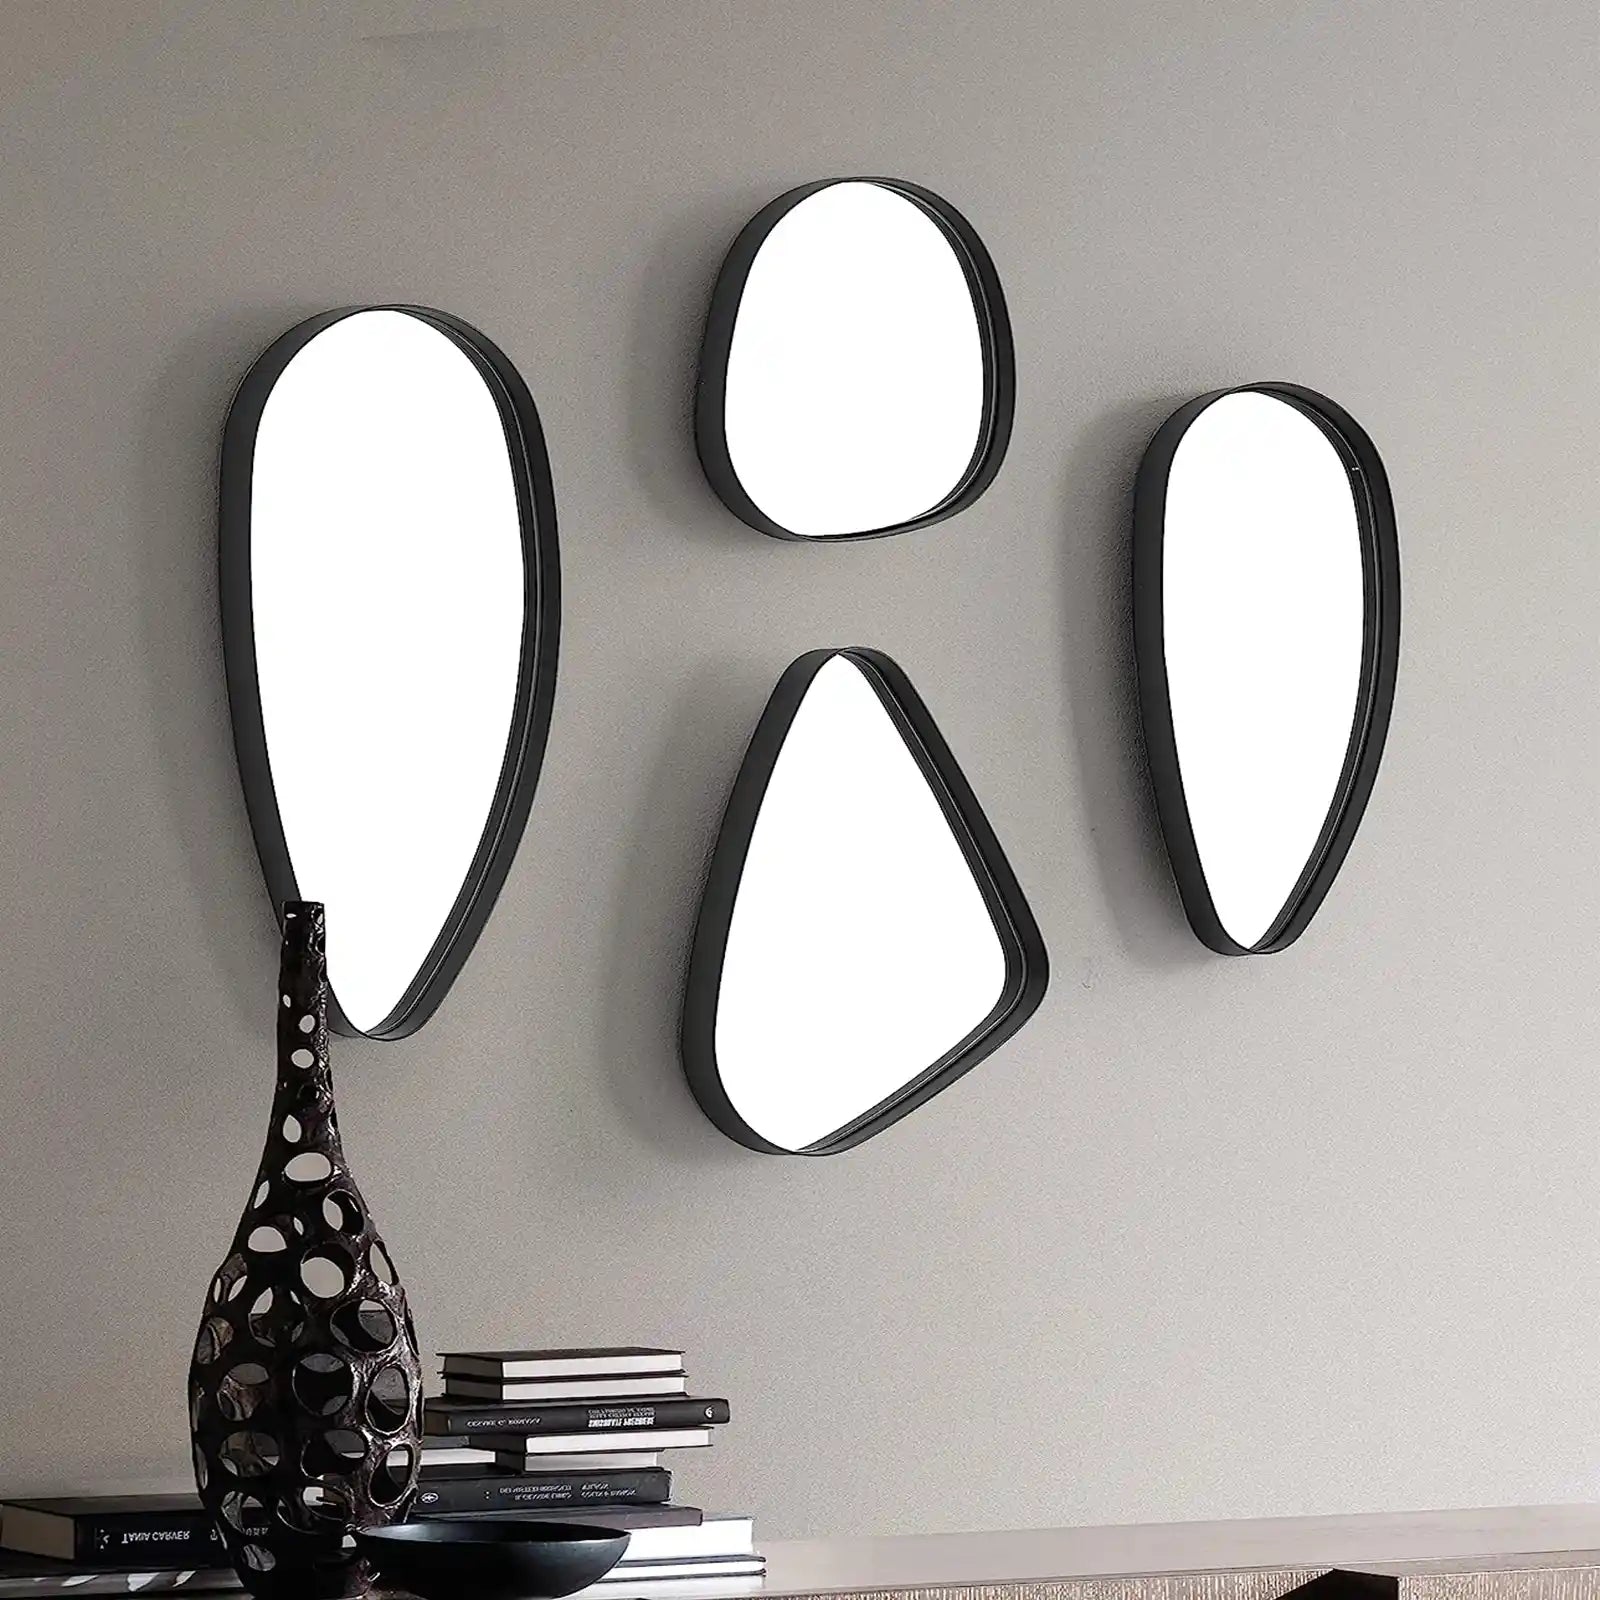 Juego de espejos de pared irregulares, juego de espejos asimétricos con marco de acero, juego de 4 espejos de guijarros, decoración de pared para sala de estar, dormitorio, baño, entrada, pasillo